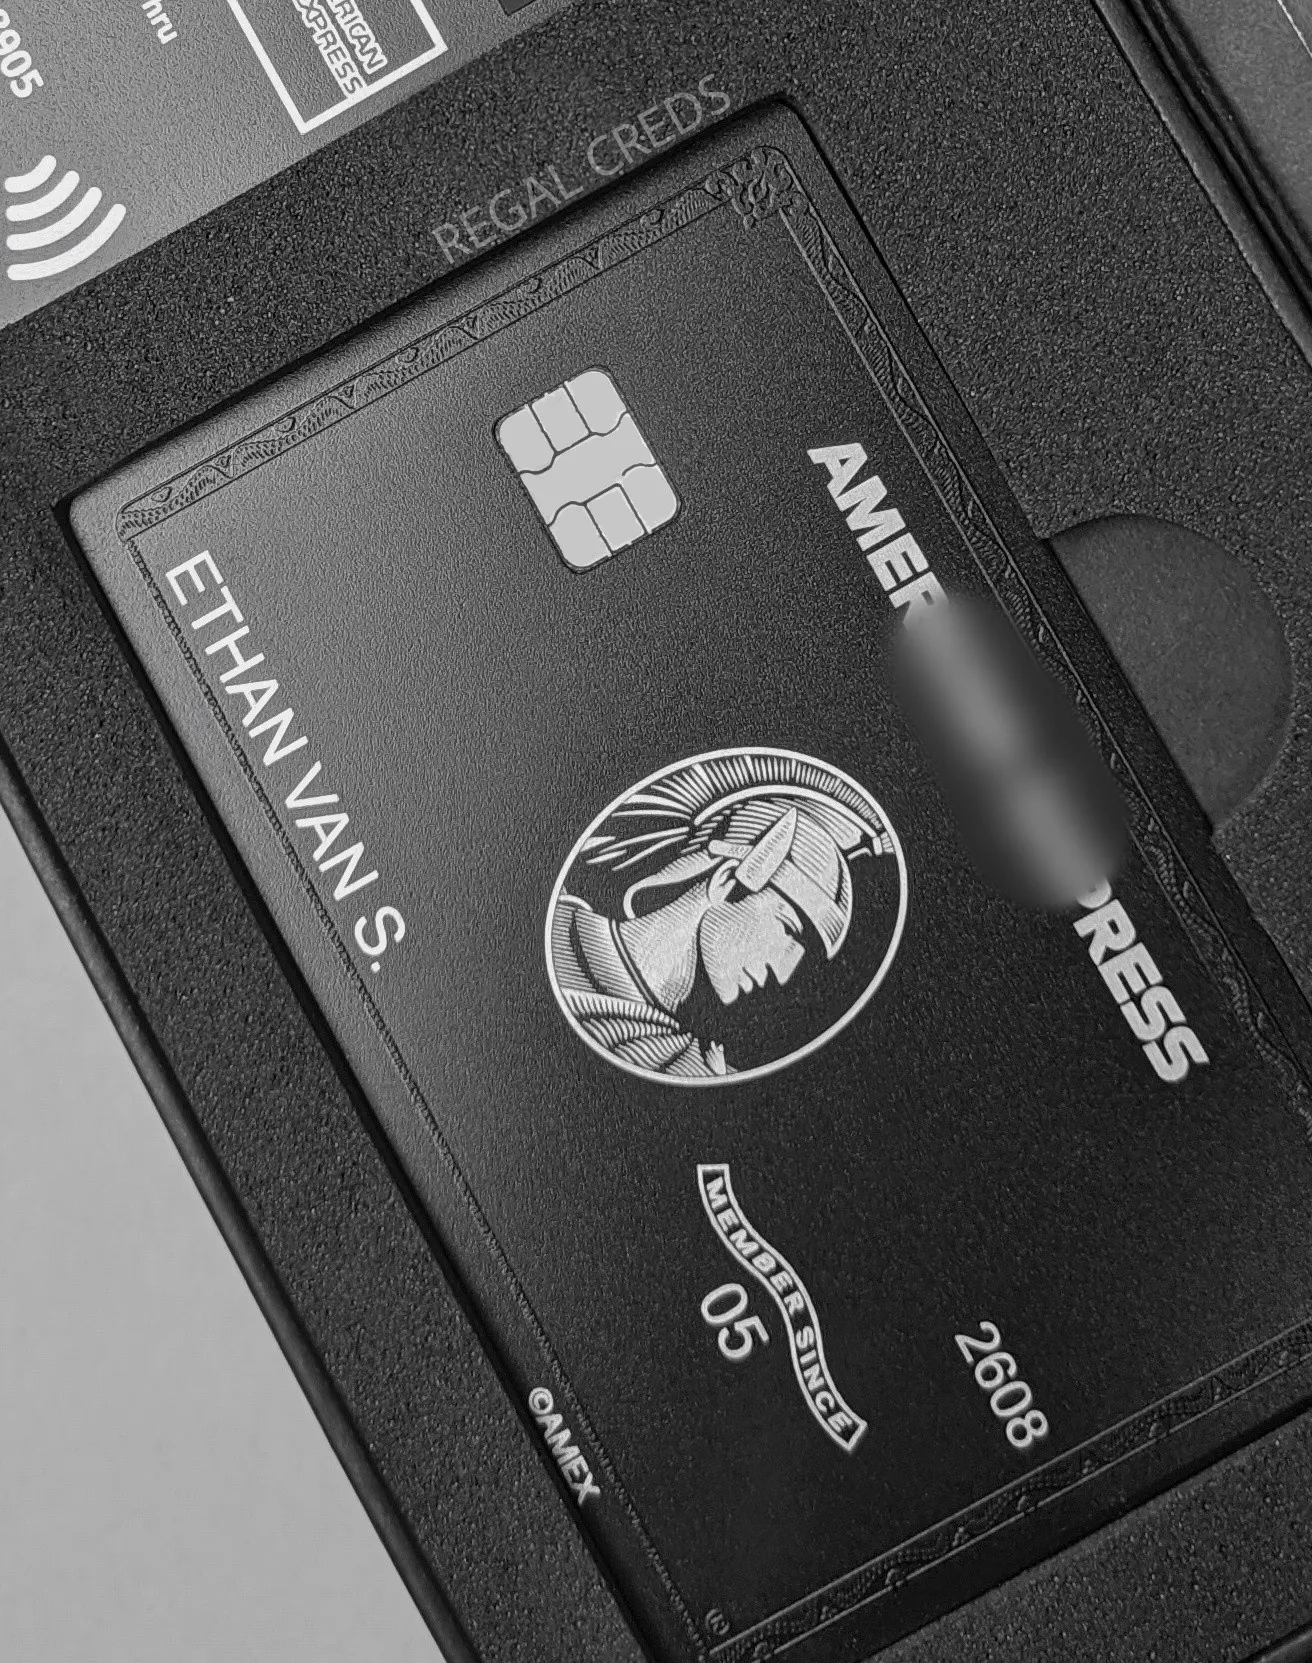 บัตรสีดำ AMEX Express ที่กำหนดเอง | แปลงบัตรโลหะพลาสติกเก่าของคุณเป็นบัตรสีดำ AMEX | บัตรนายร้อย AMEX